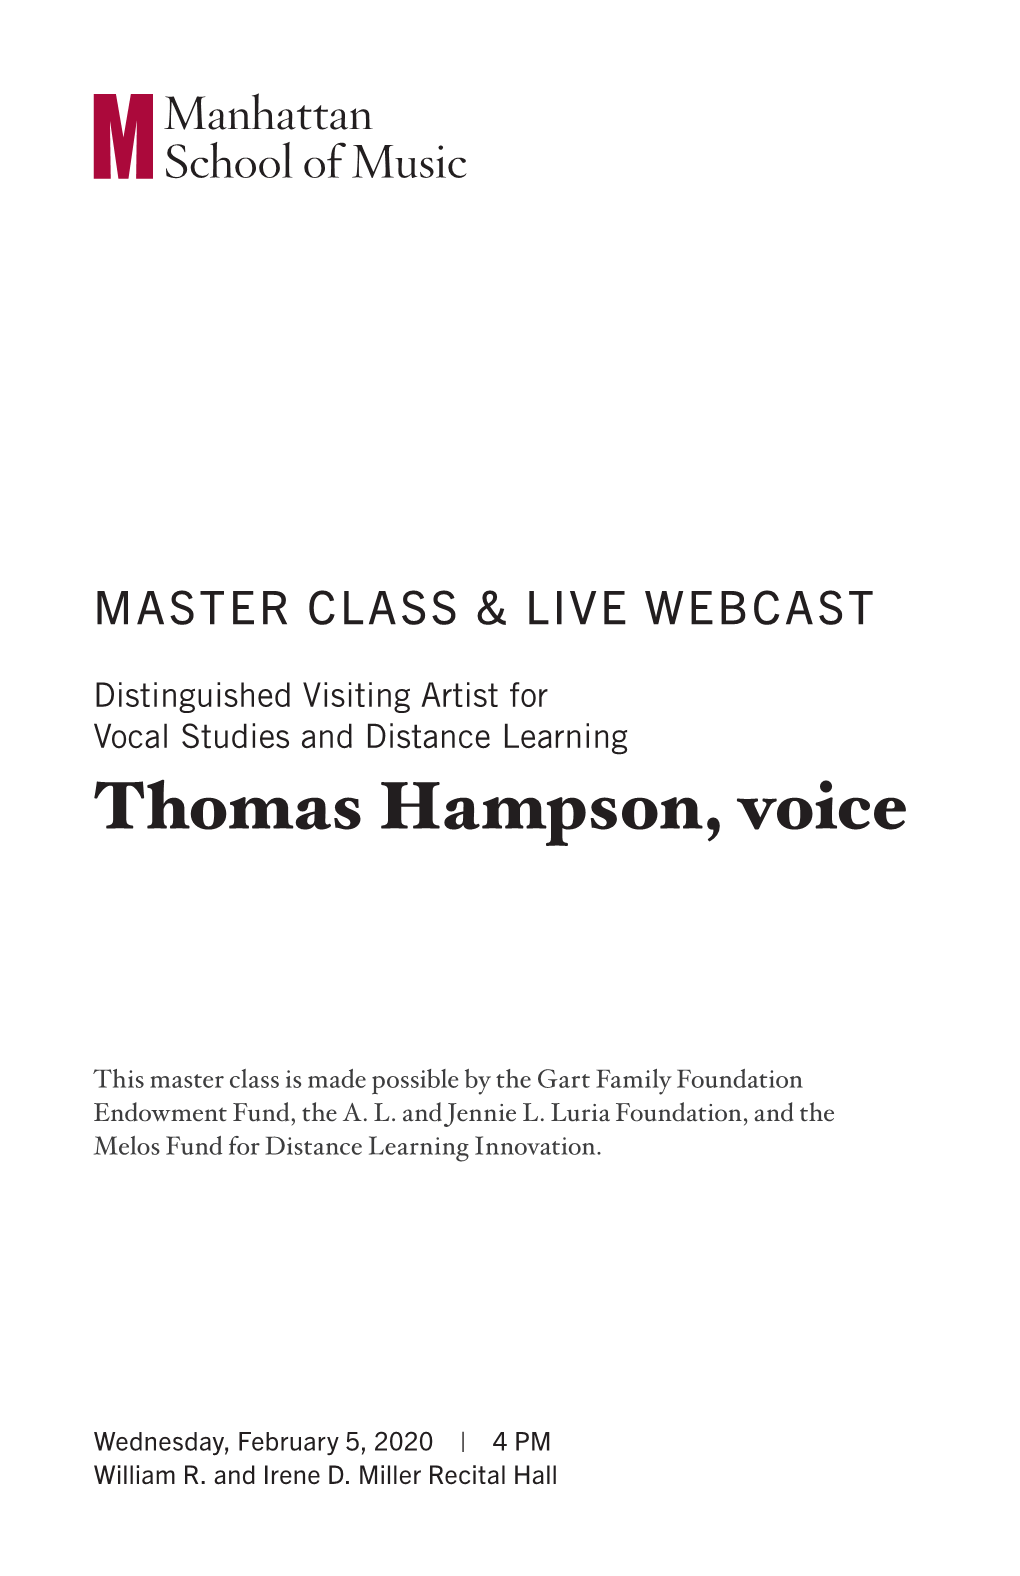 Thomas Hampson, Voice